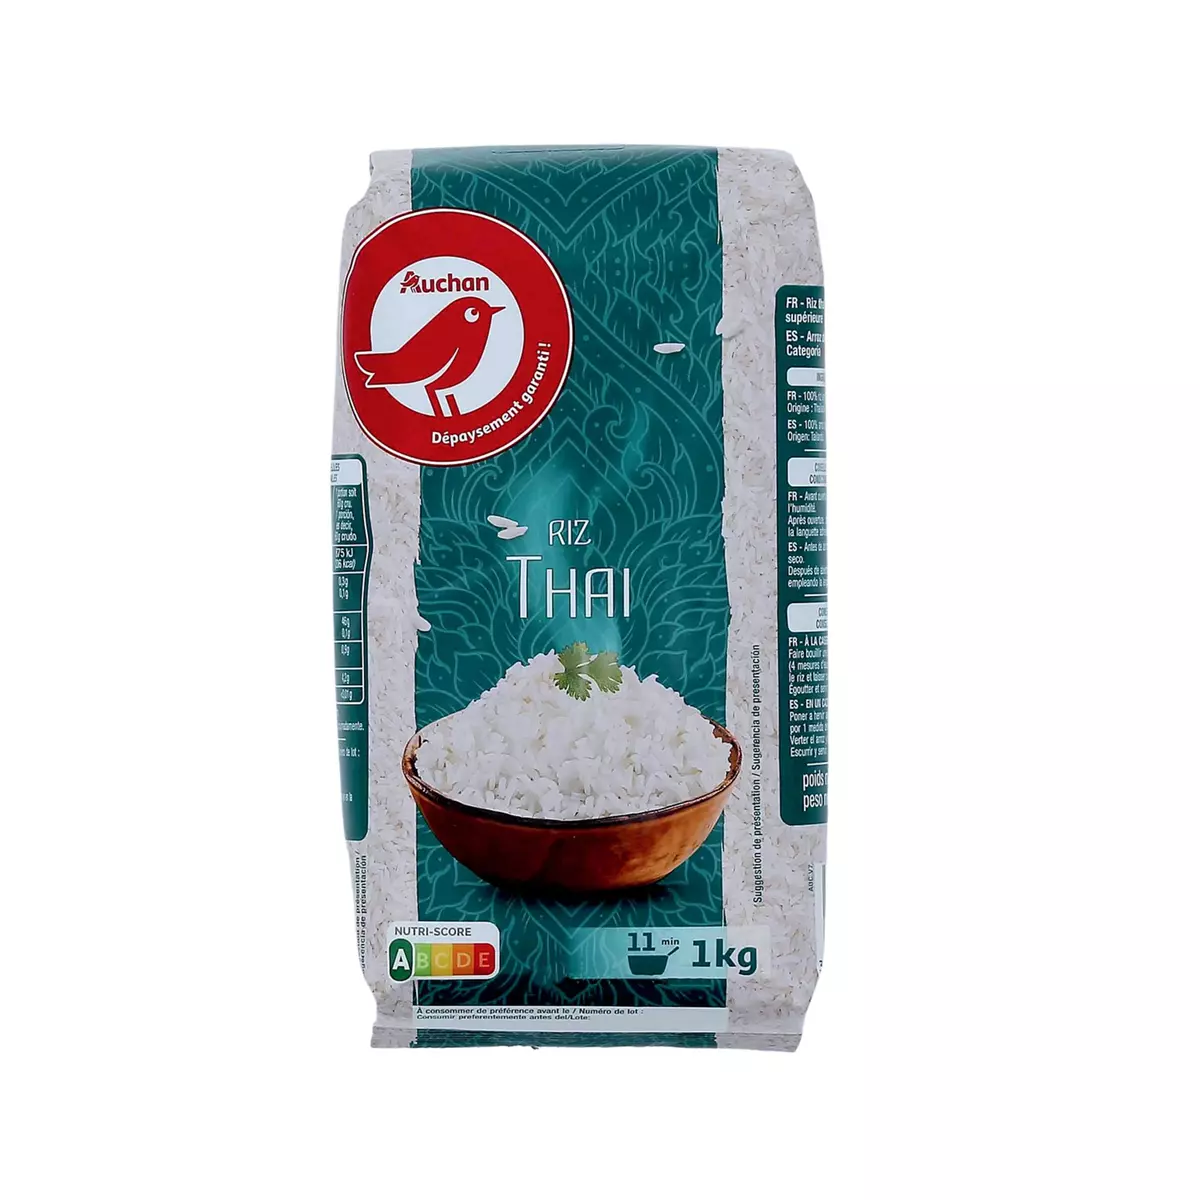 AUCHAN Riz thaï prêt en 11min 1kg